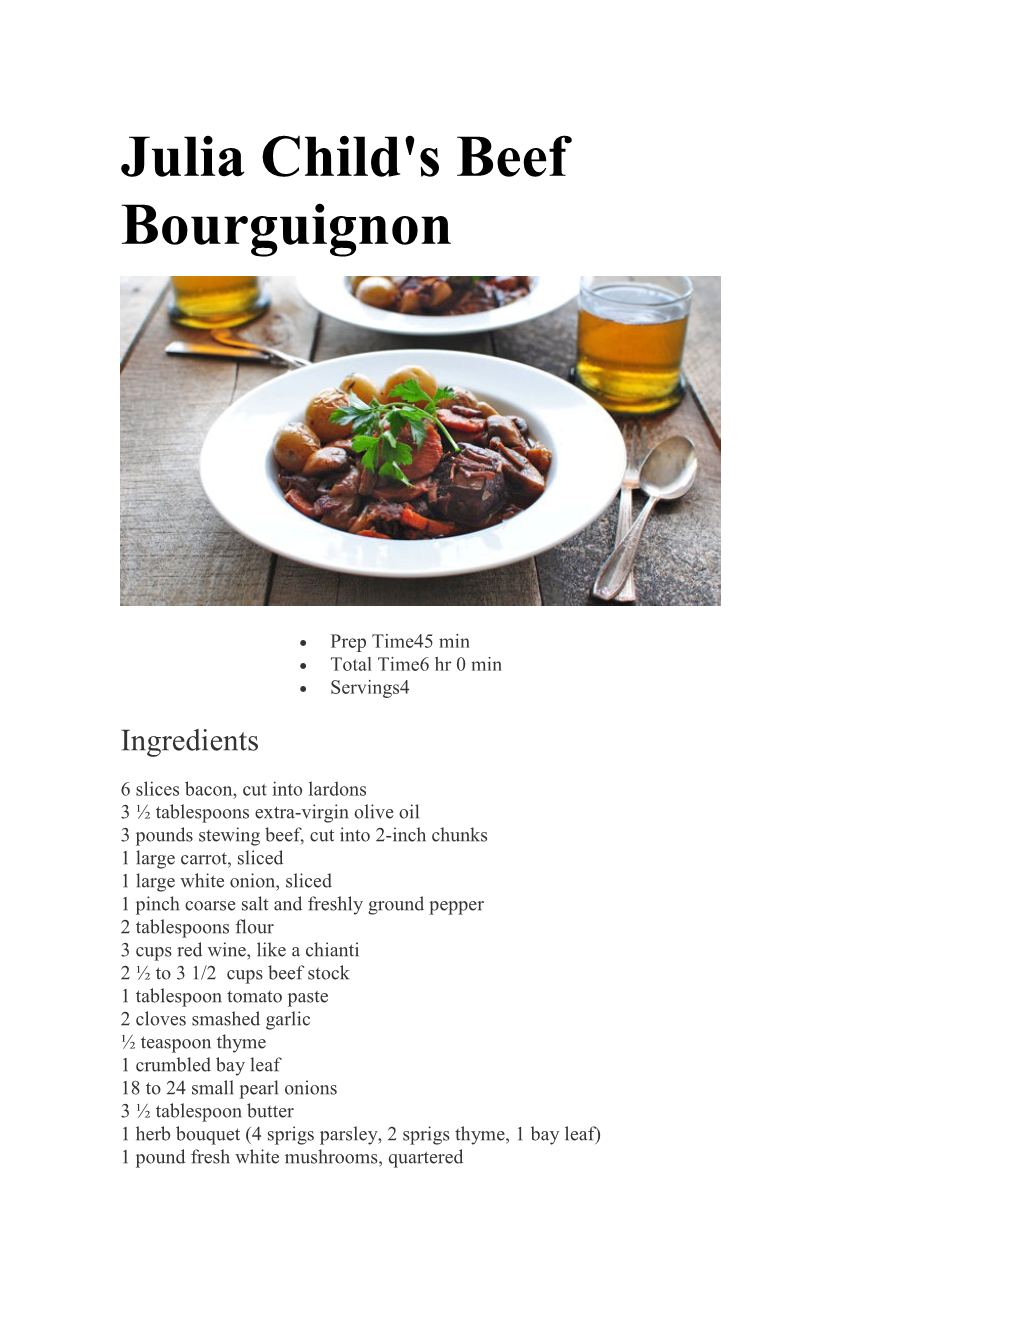 Julia Child's Beef Bourguignon